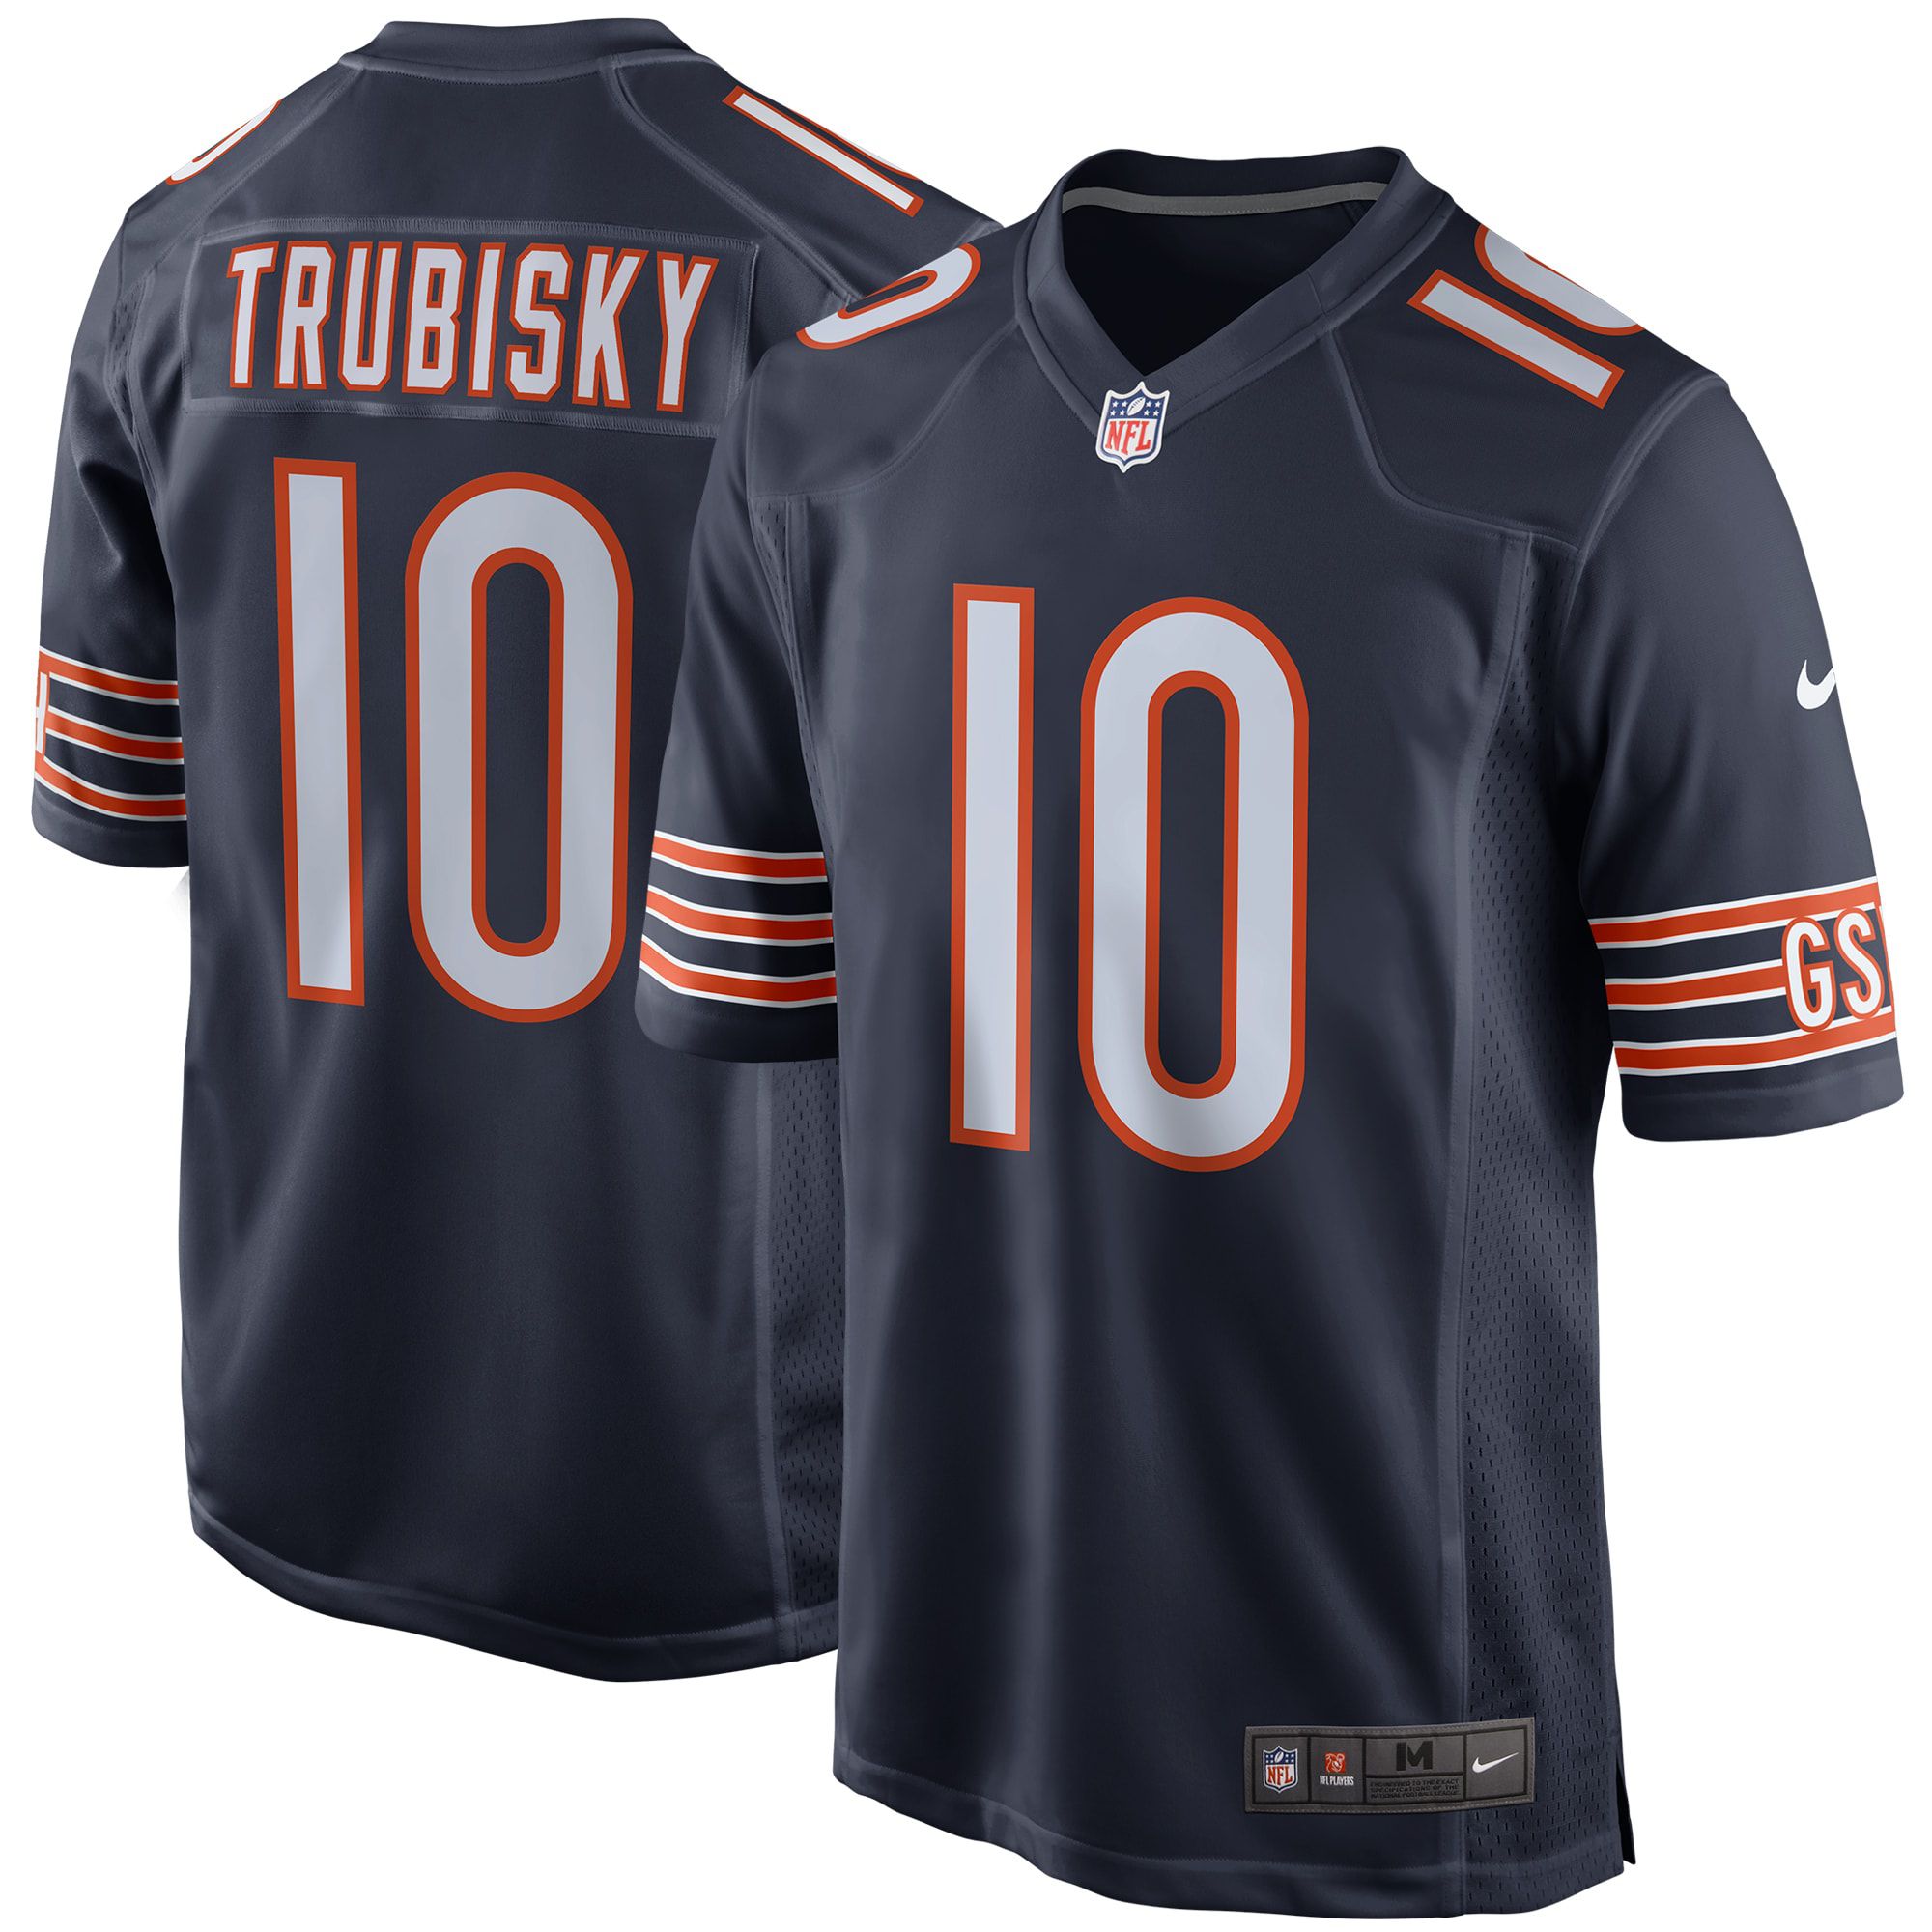 Men Chicago Bears #10 Mitchell Trubisky Nike Navy Game NFL Jersey->chicago bears->NFL Jersey